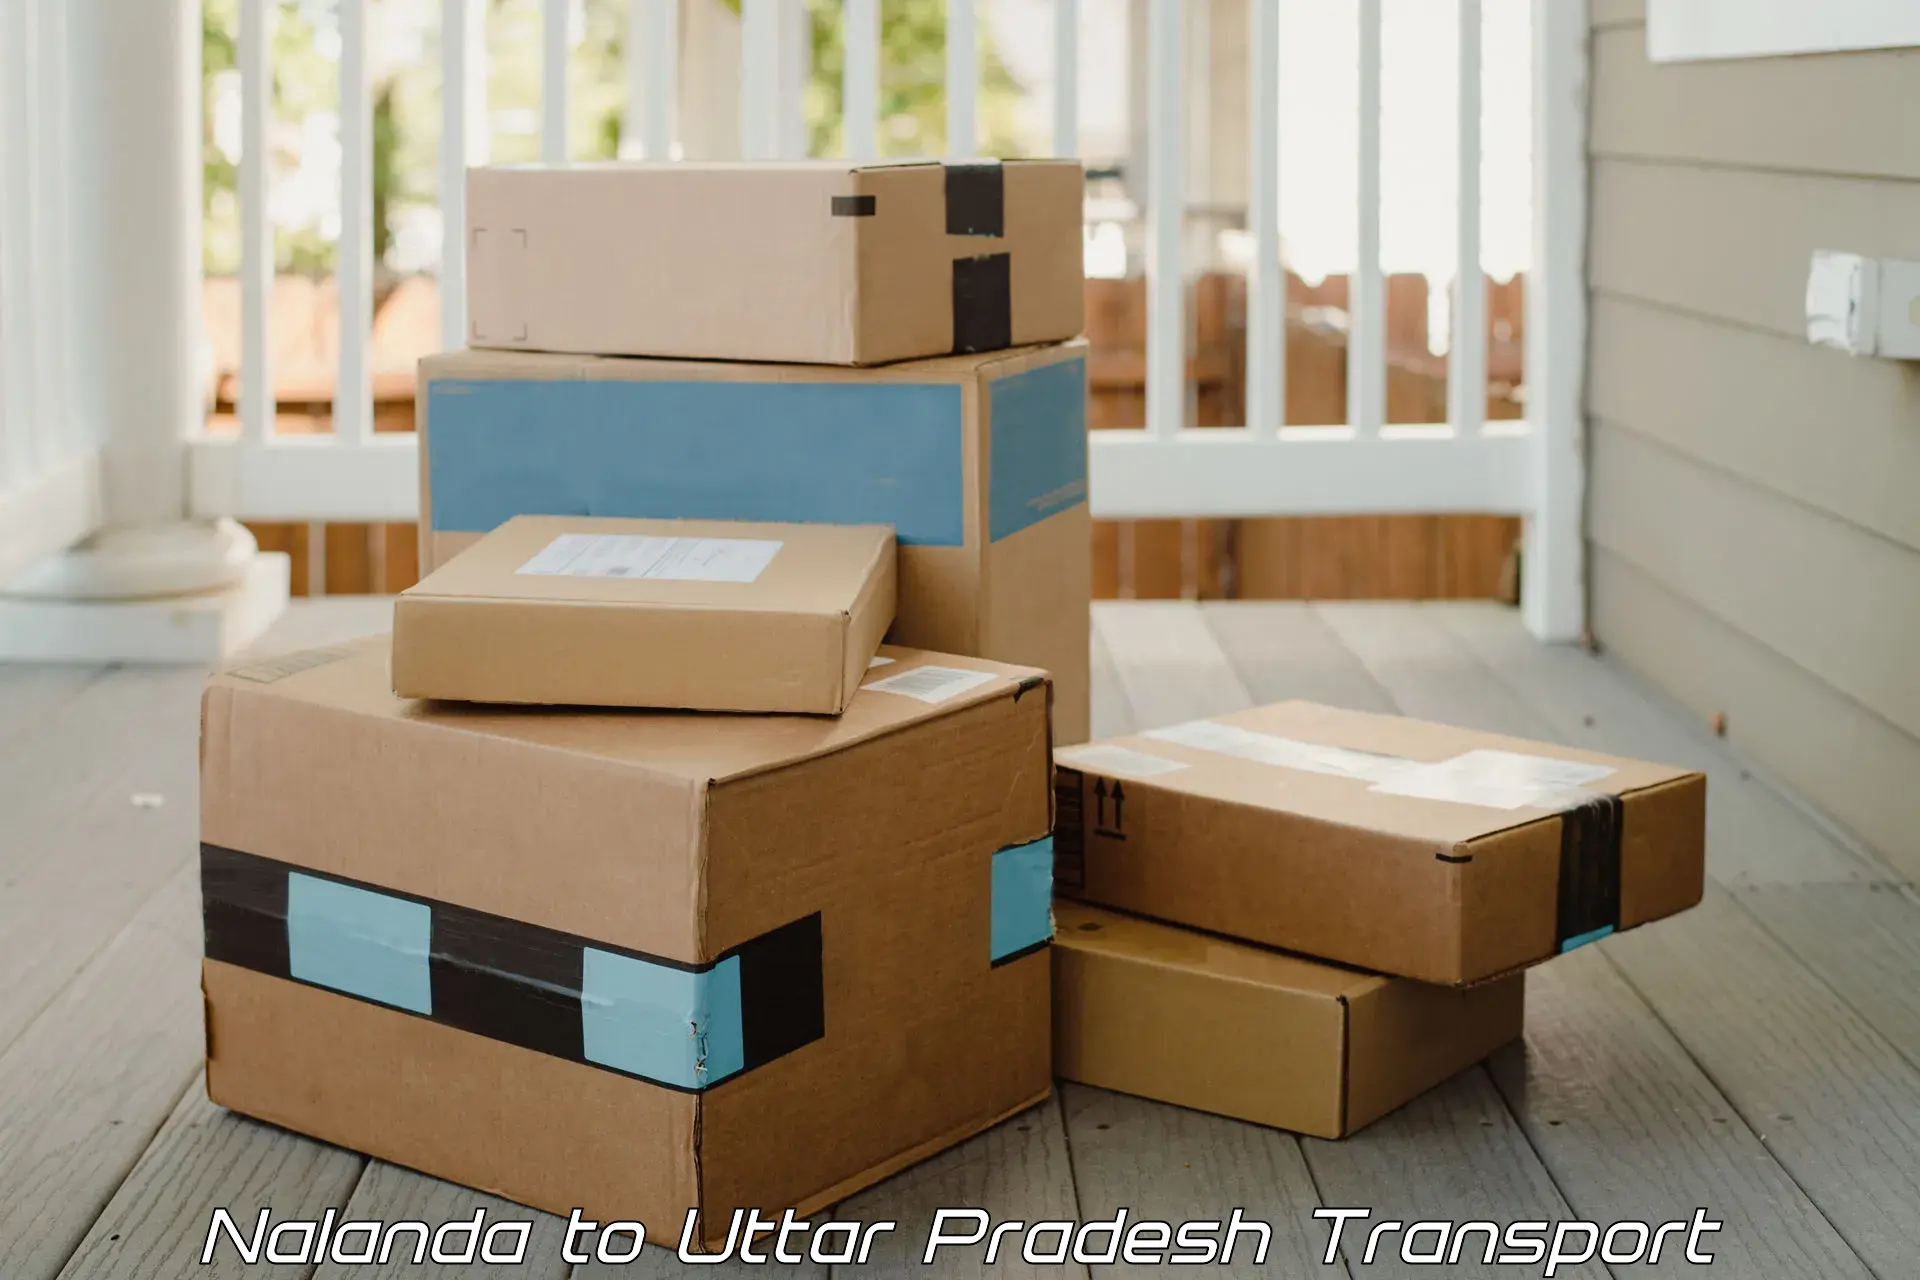 Container transportation services in Nalanda to Uttar Pradesh